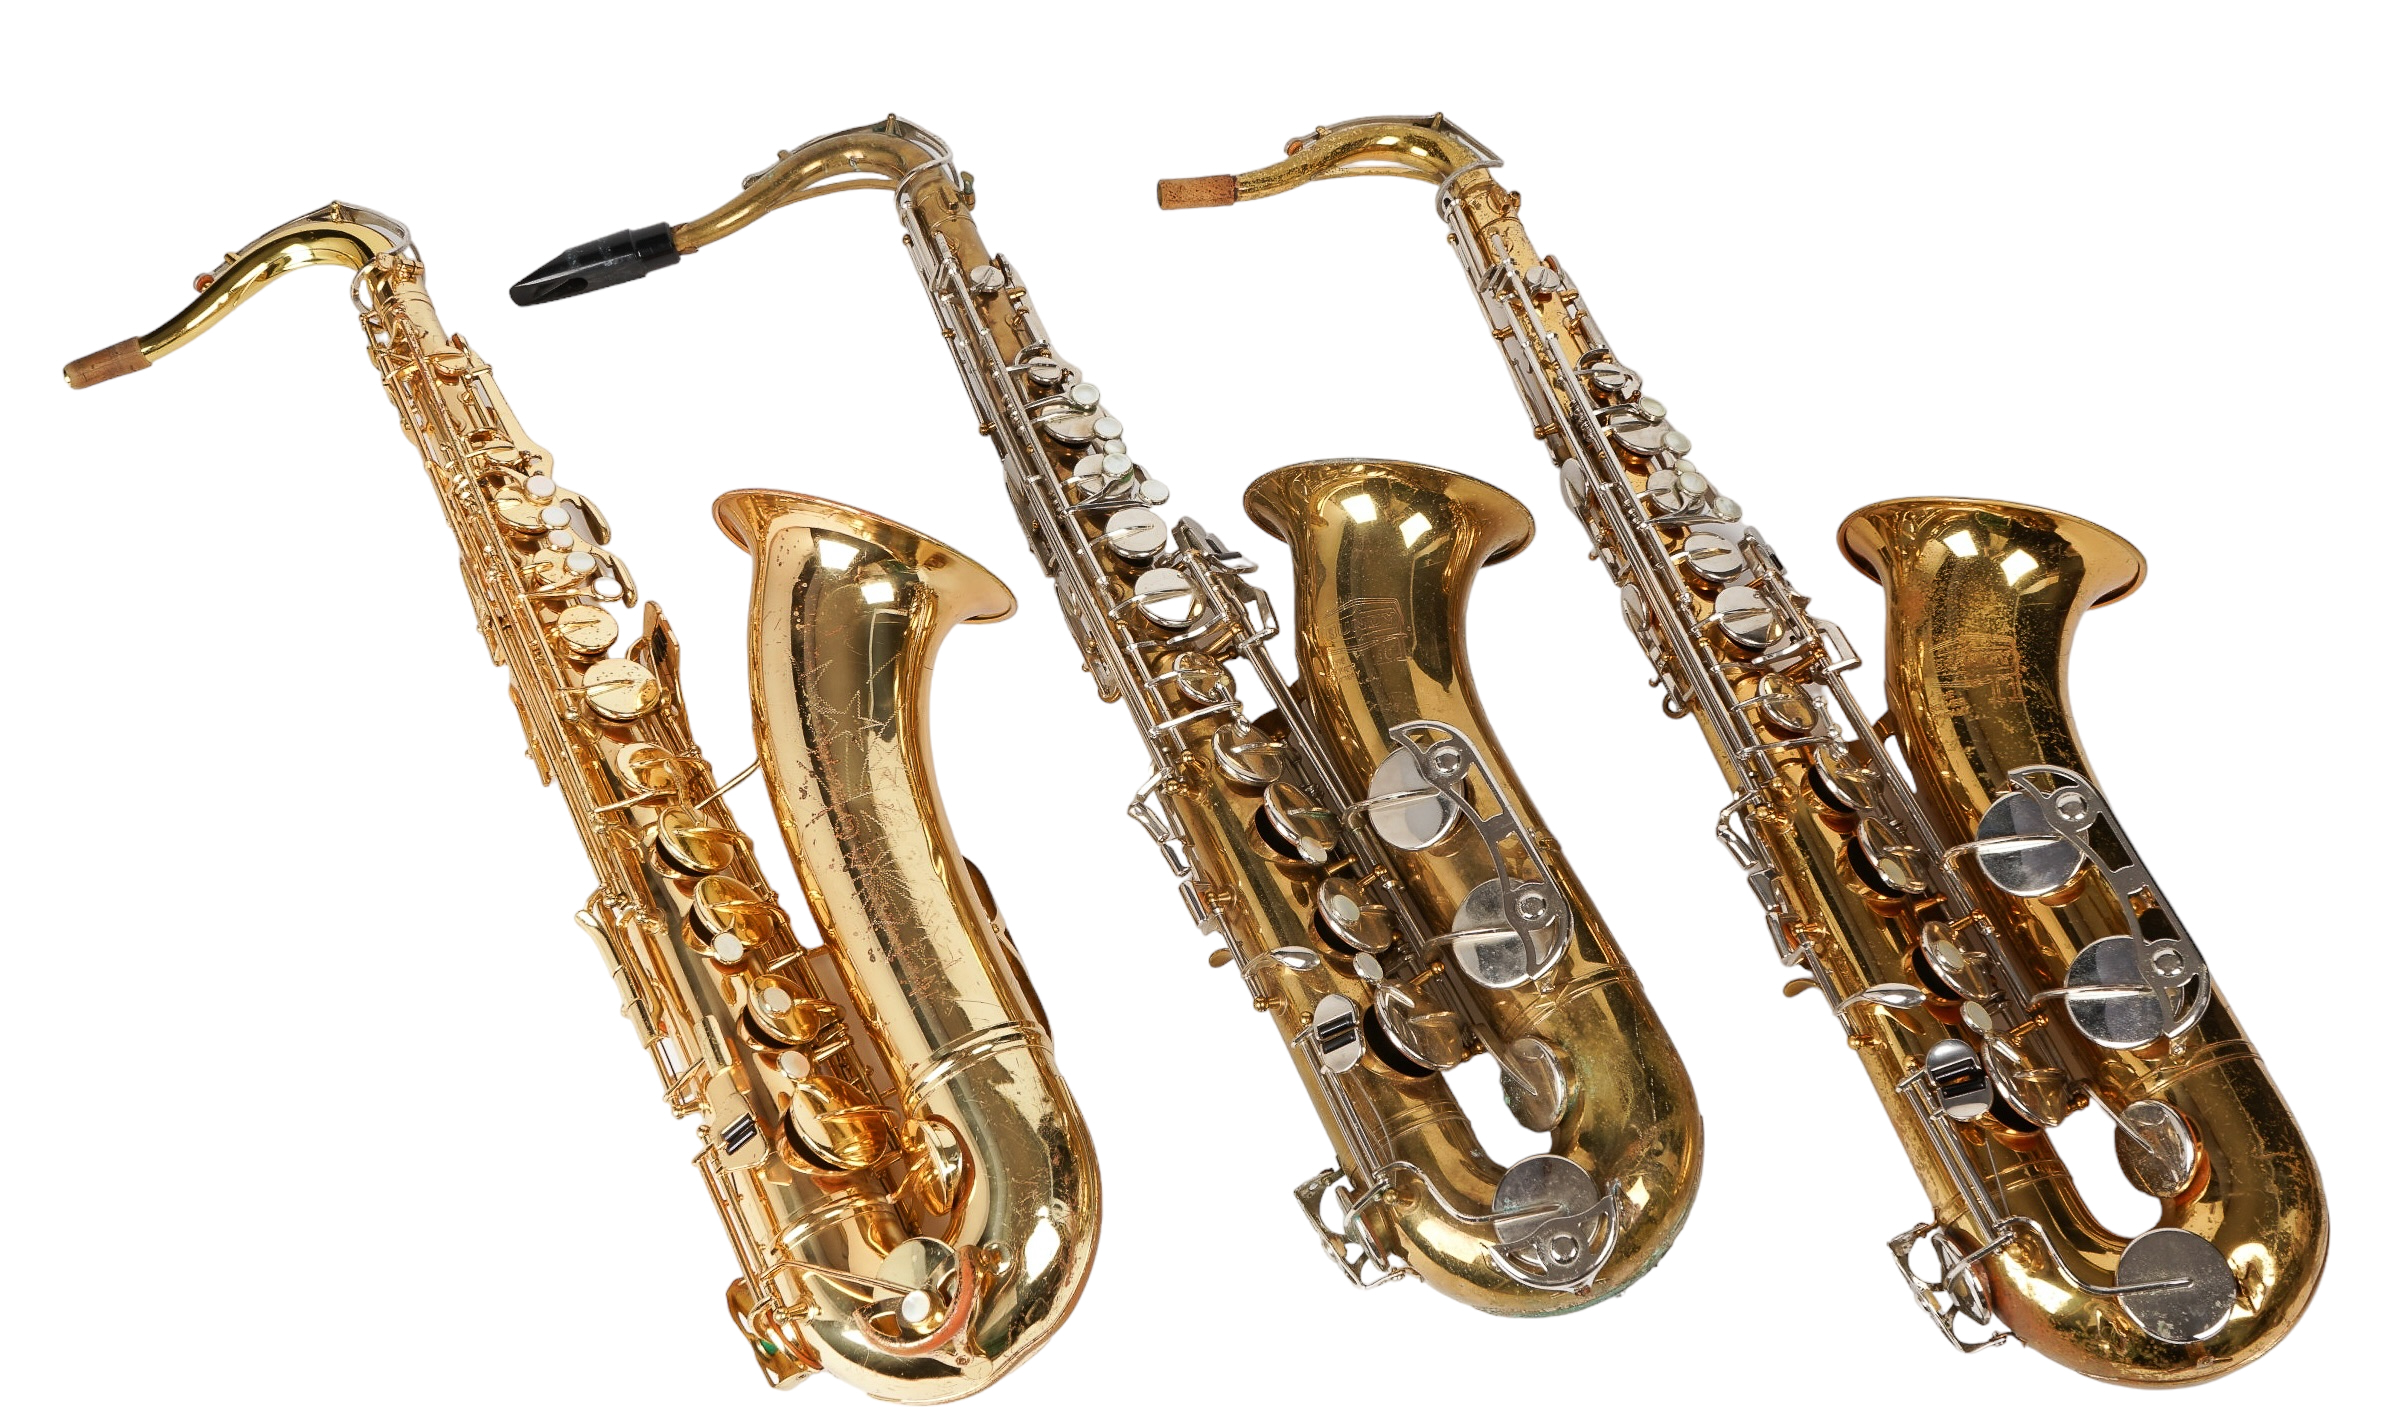 (3) Tenor saxophones, c/o Conn